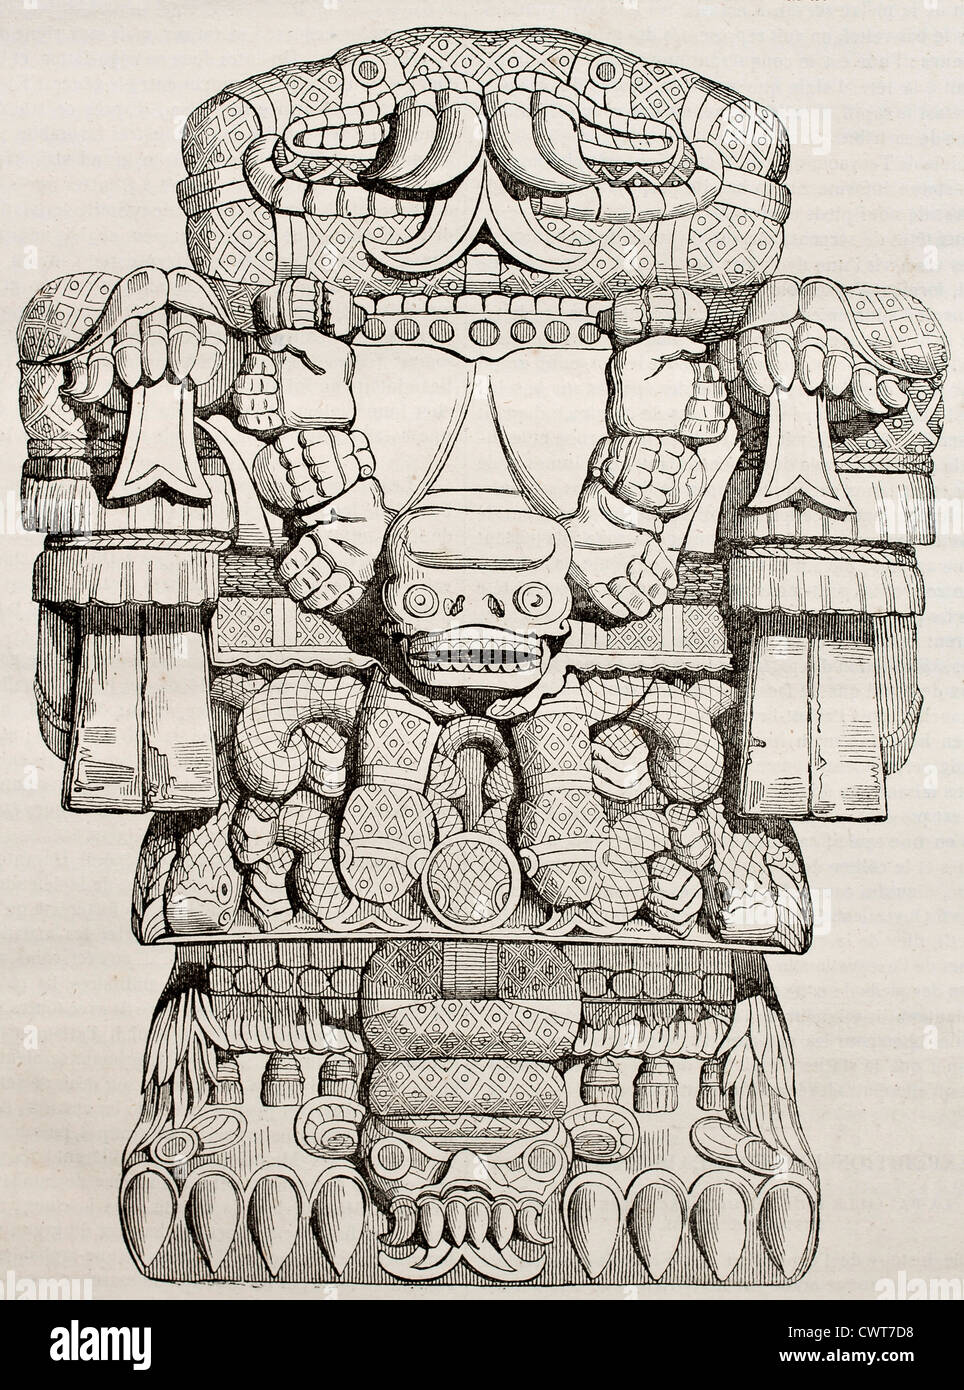 Teoyaomicqui, dios azteca de muertos alma perdida Foto de stock